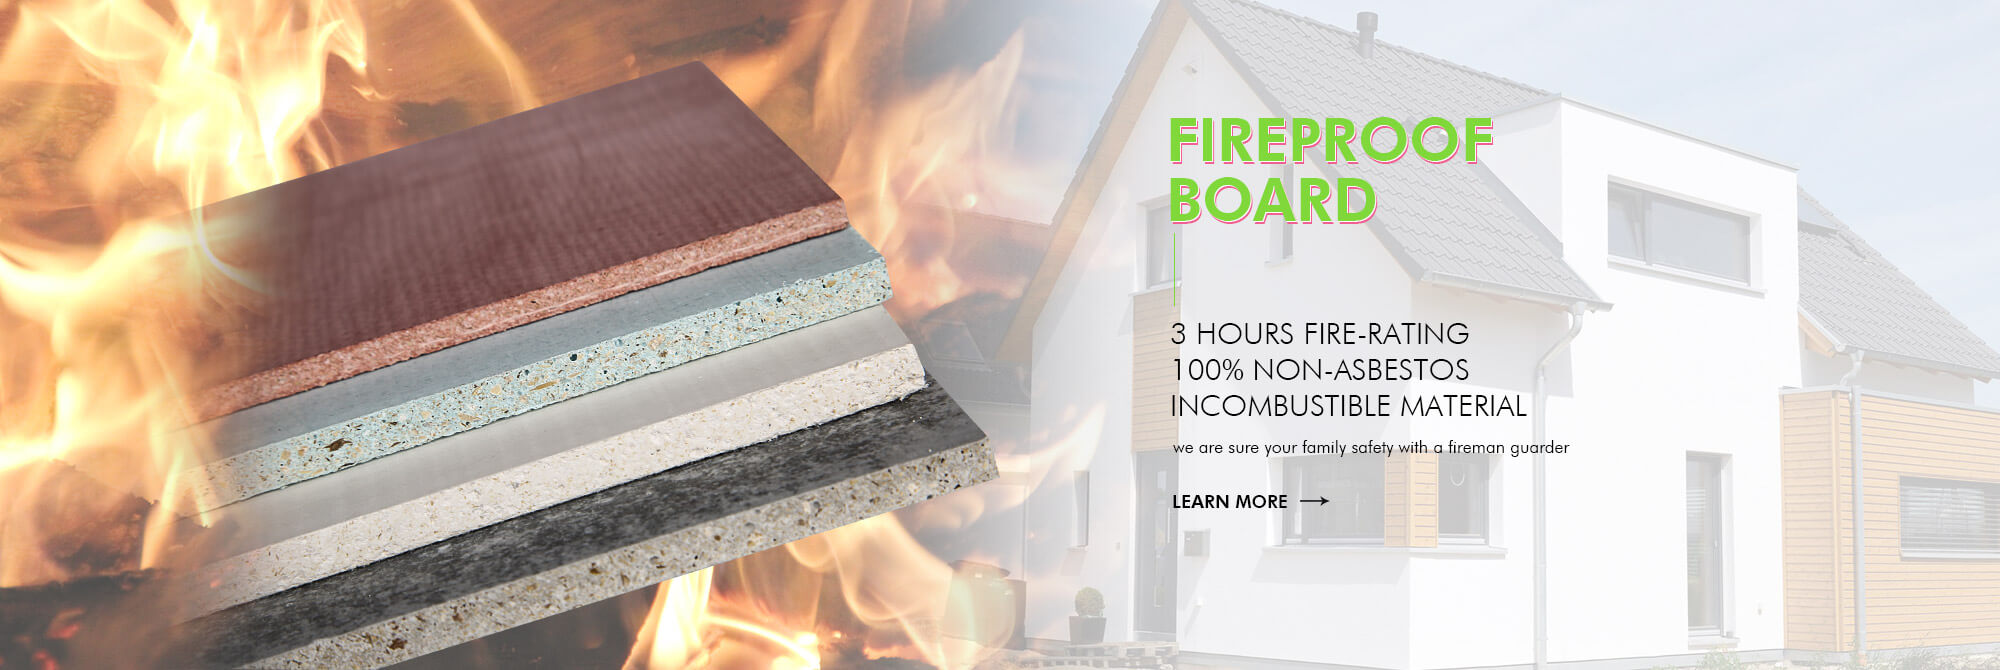 Fireproof board market price